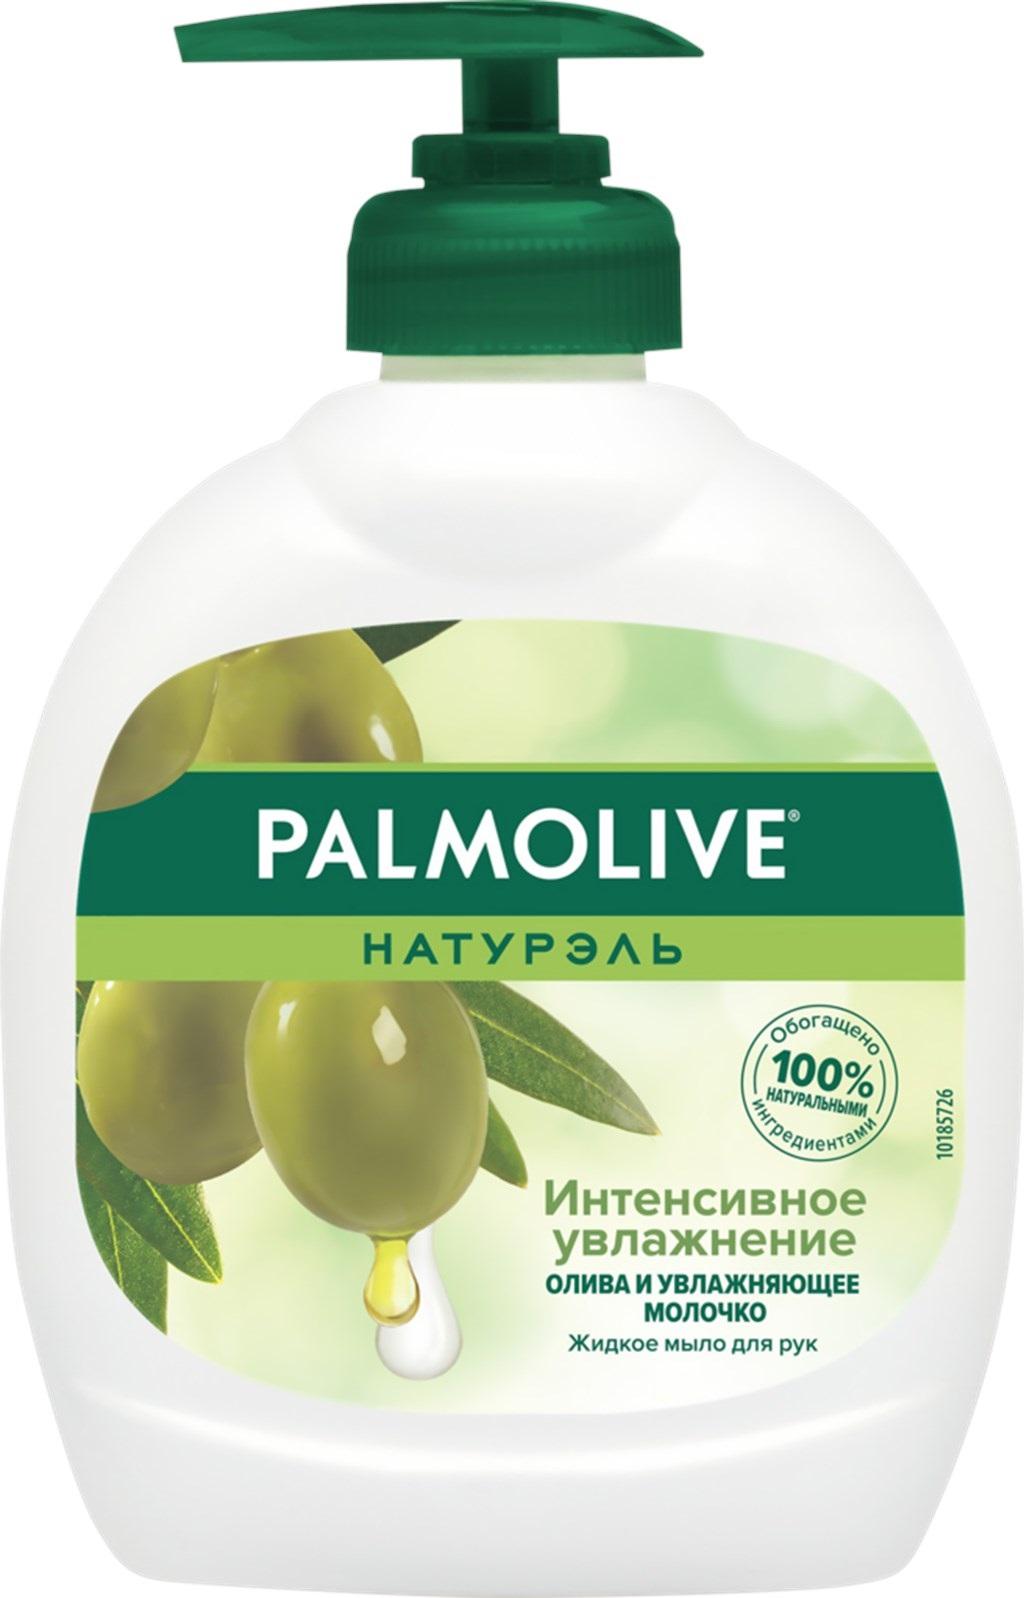 Palmolive Натурэль Интенсивное увлажнение Олива и увлажняющее молочко